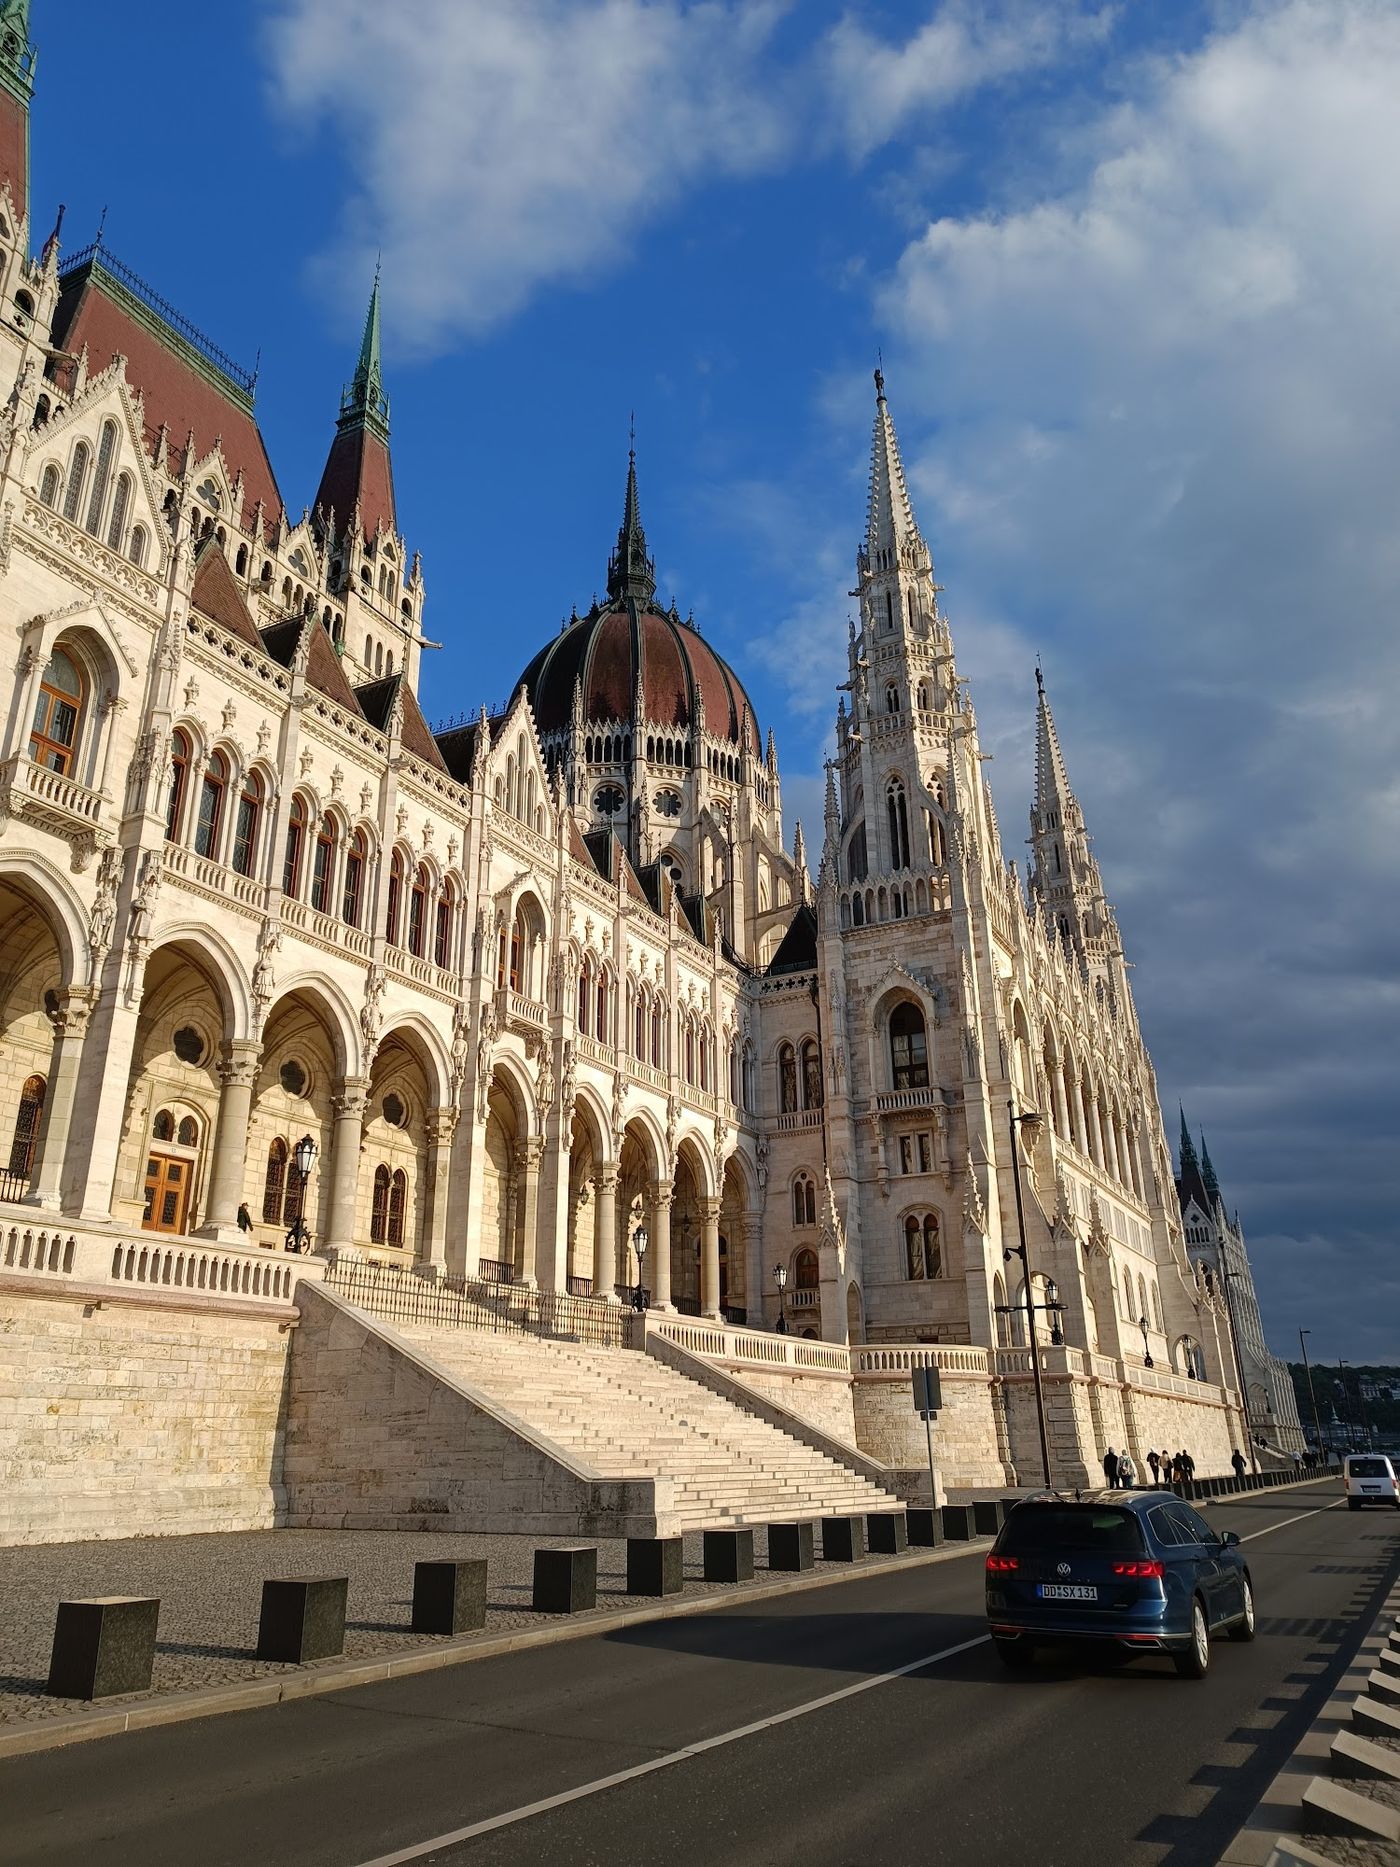 Bestaune eines der beeindruckendsten Gebäude Europas